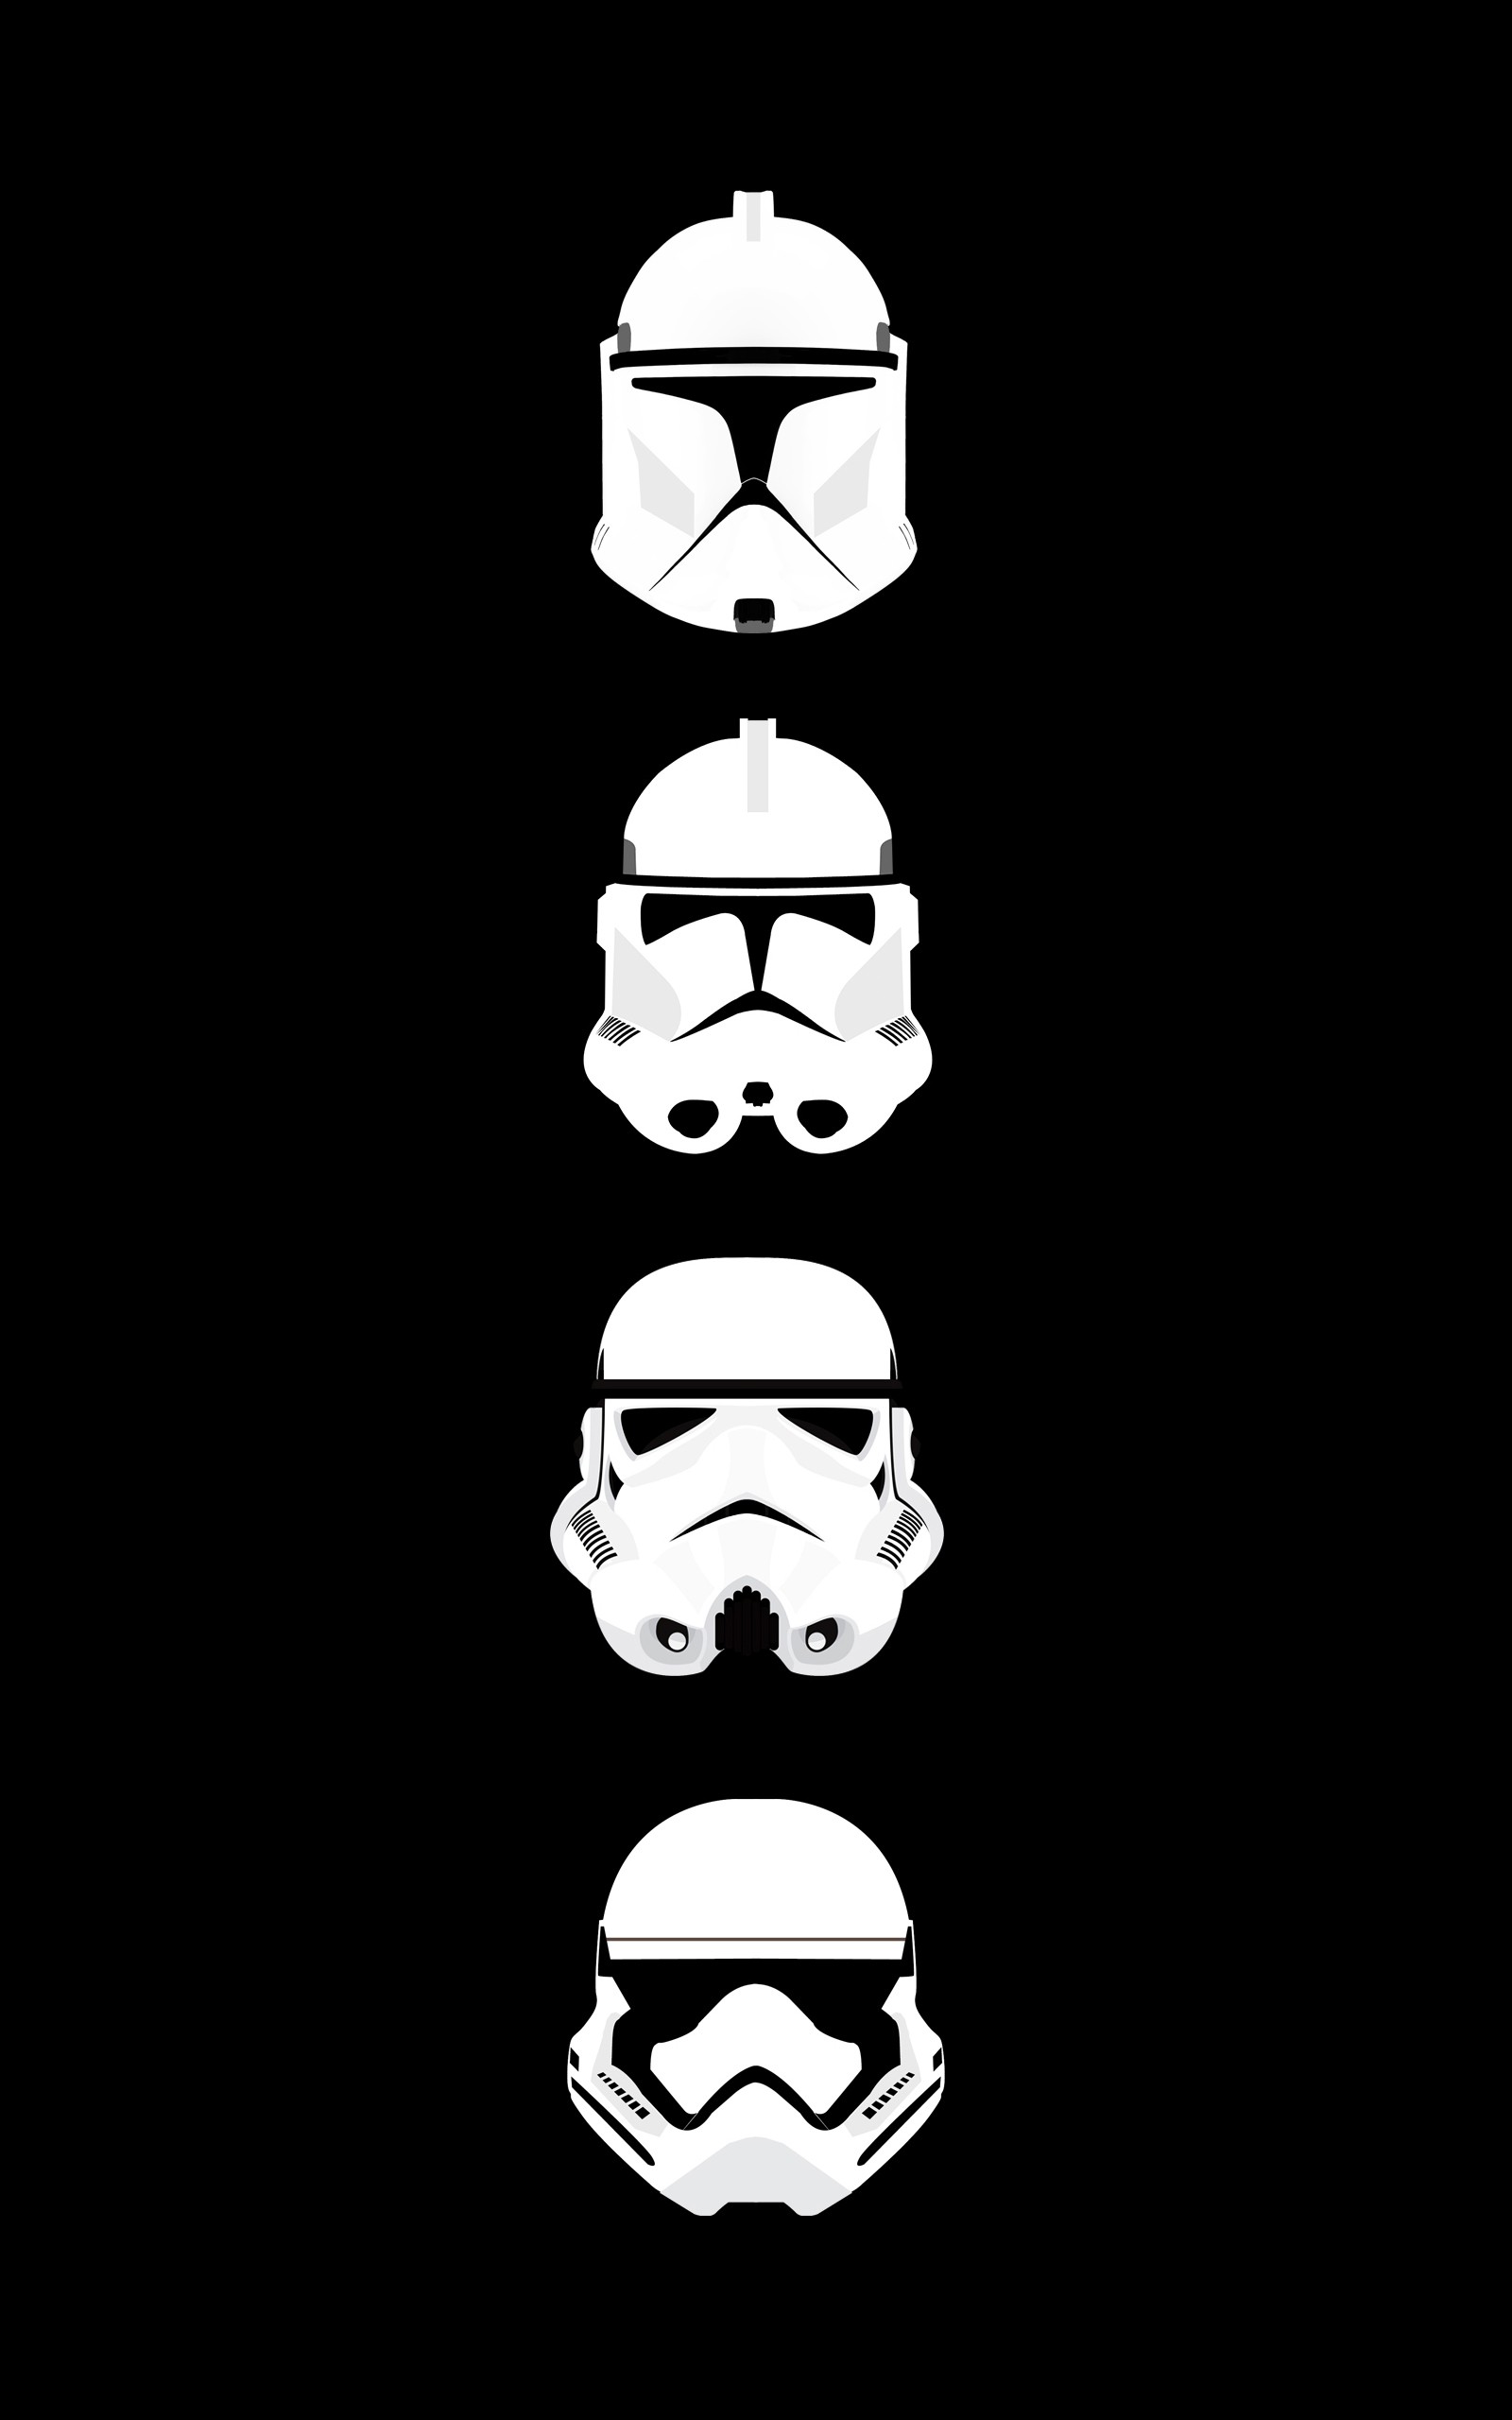 Star Wars Clone Trooper Stormtrooper Helmet Minimalism Black Portrait Display Evolution 1600x2560